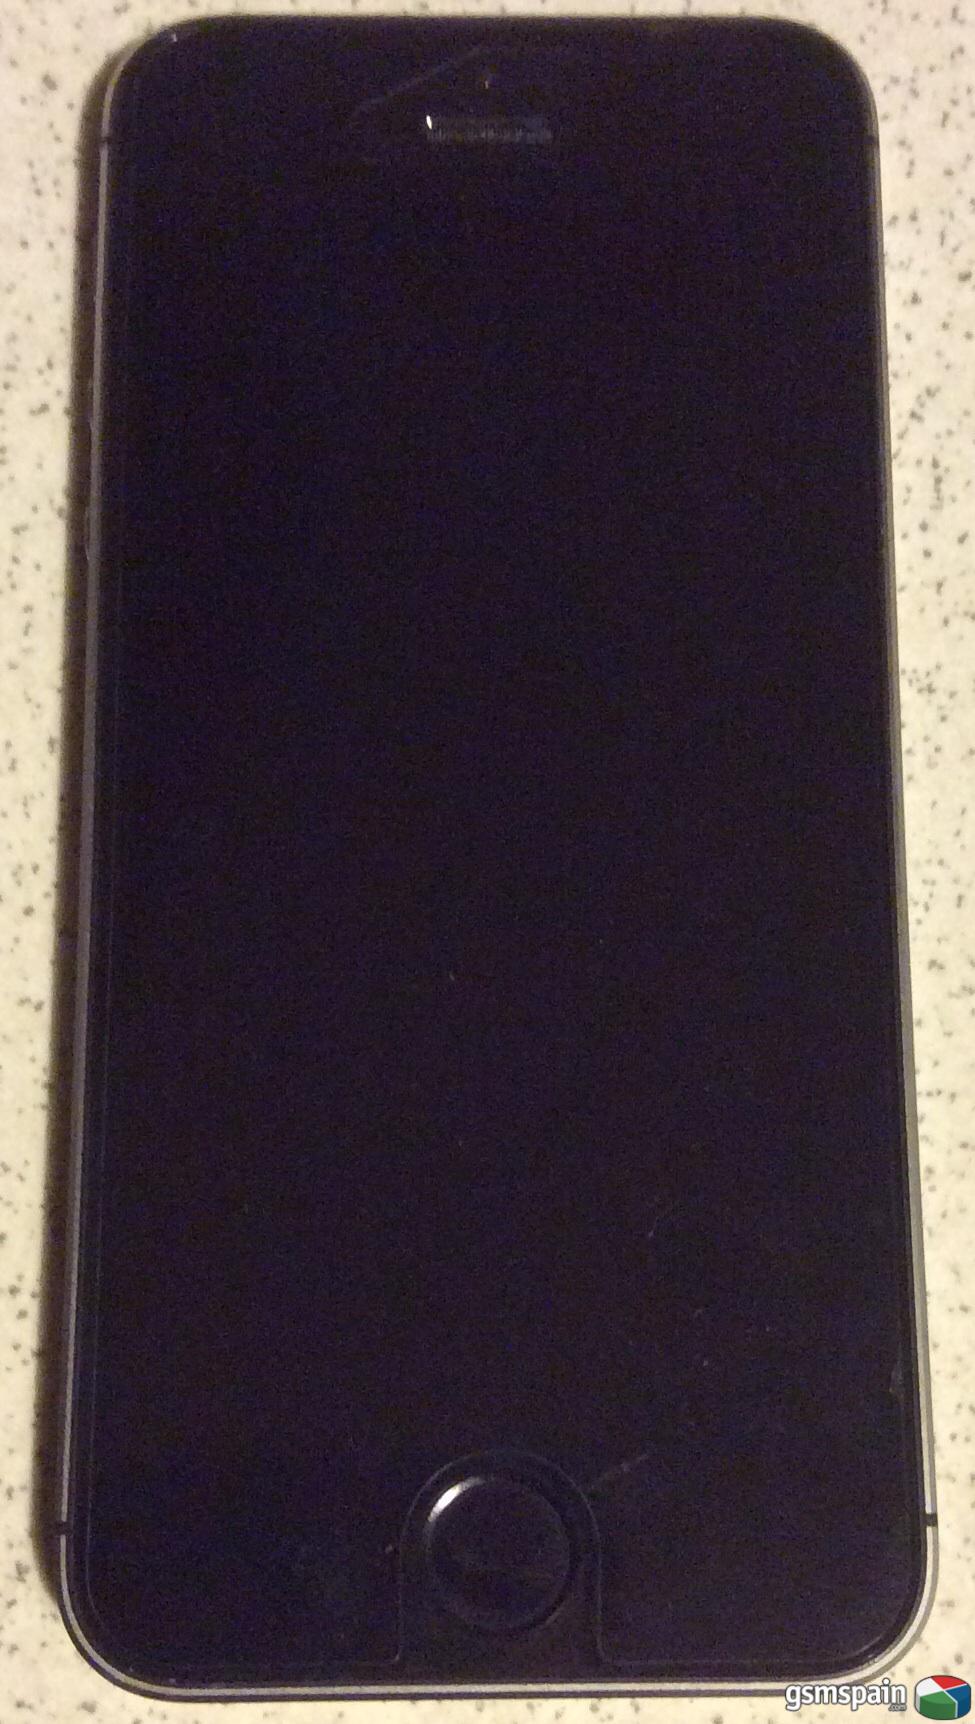 [VENDO] Vendo Iphone 5S negro espacial 16 Gb